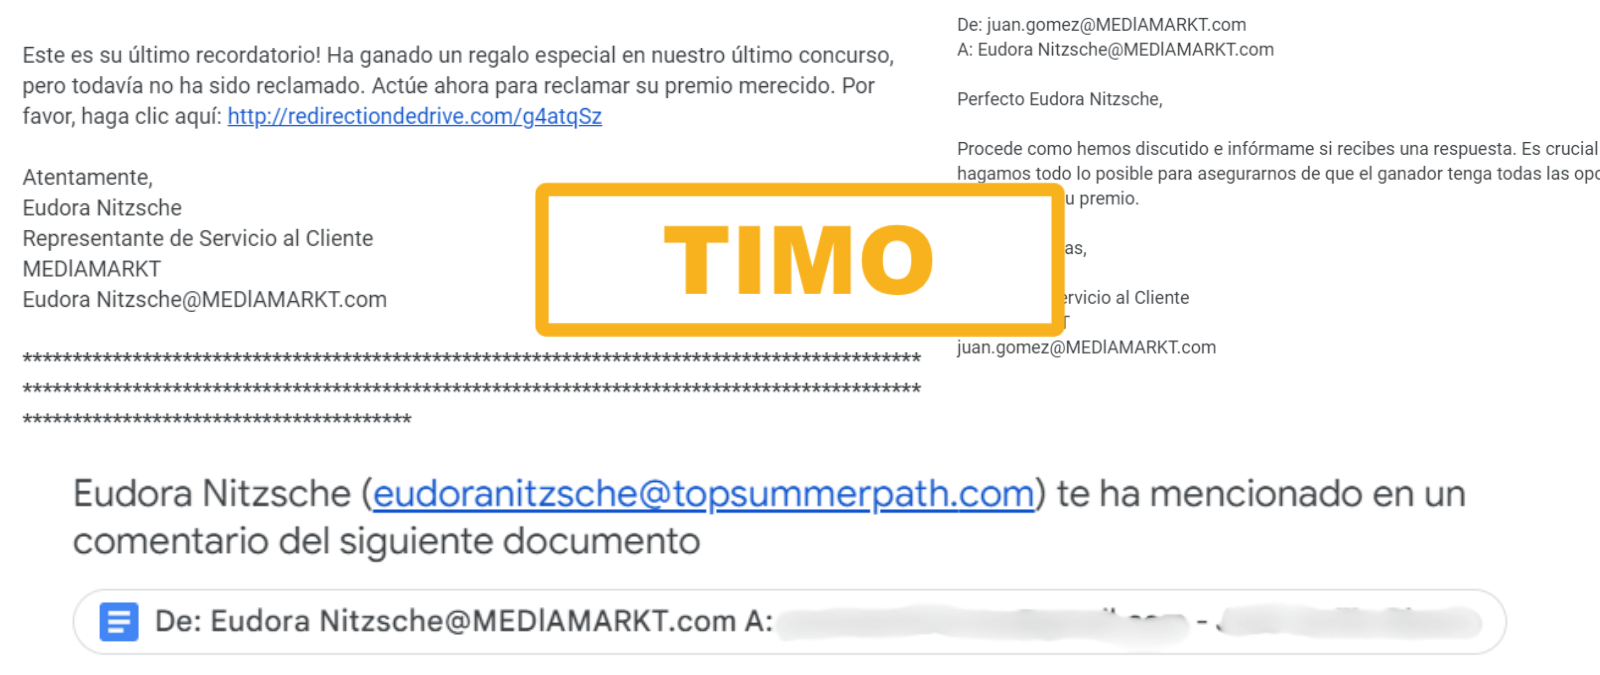 No, este correo que afirma que has ganado un “regalo especial” en su último concurso no es de MediaMarkt: es un timo